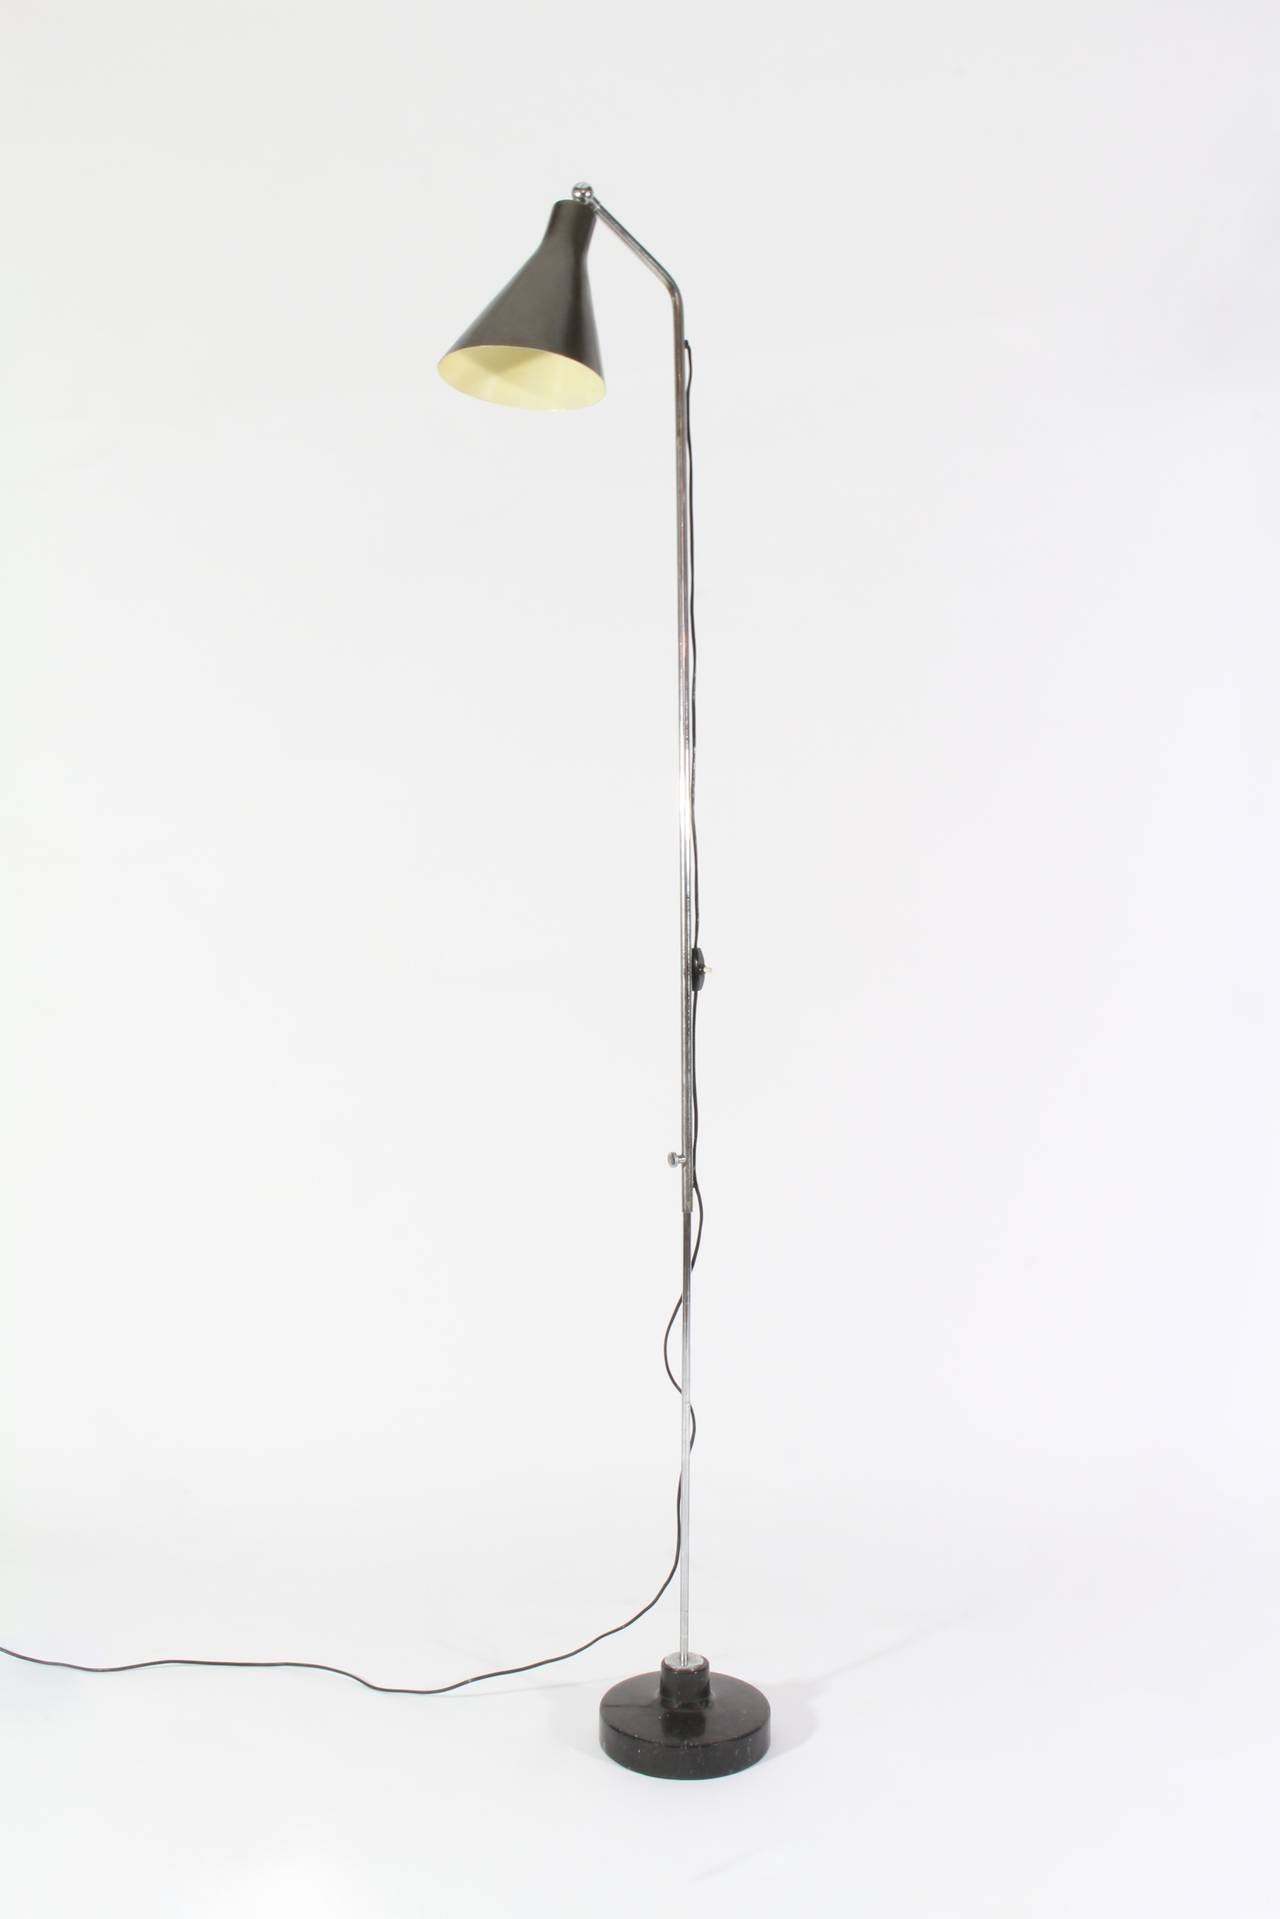 Ignazio Gardella Lte Three Floor Lamp In Excellent Condition For Sale In Chicago, IL